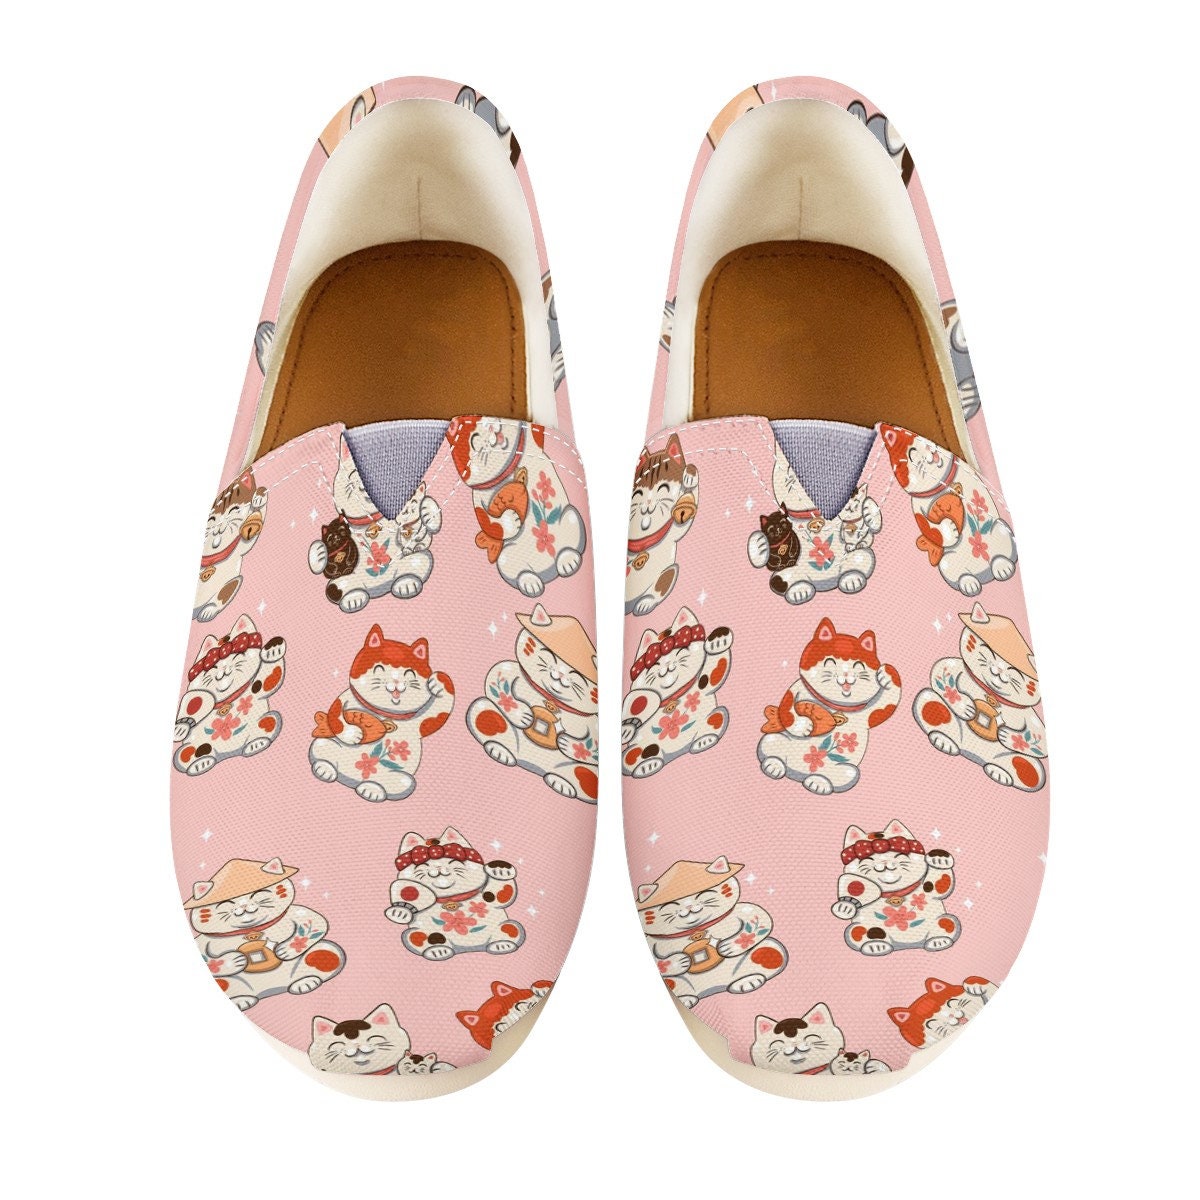 Maneki Neko Custom Casual Shoes, Women Casual Shoes, Kitty Casual Shoes, Pink And Blue Casual Shoes, Cats Shoes,